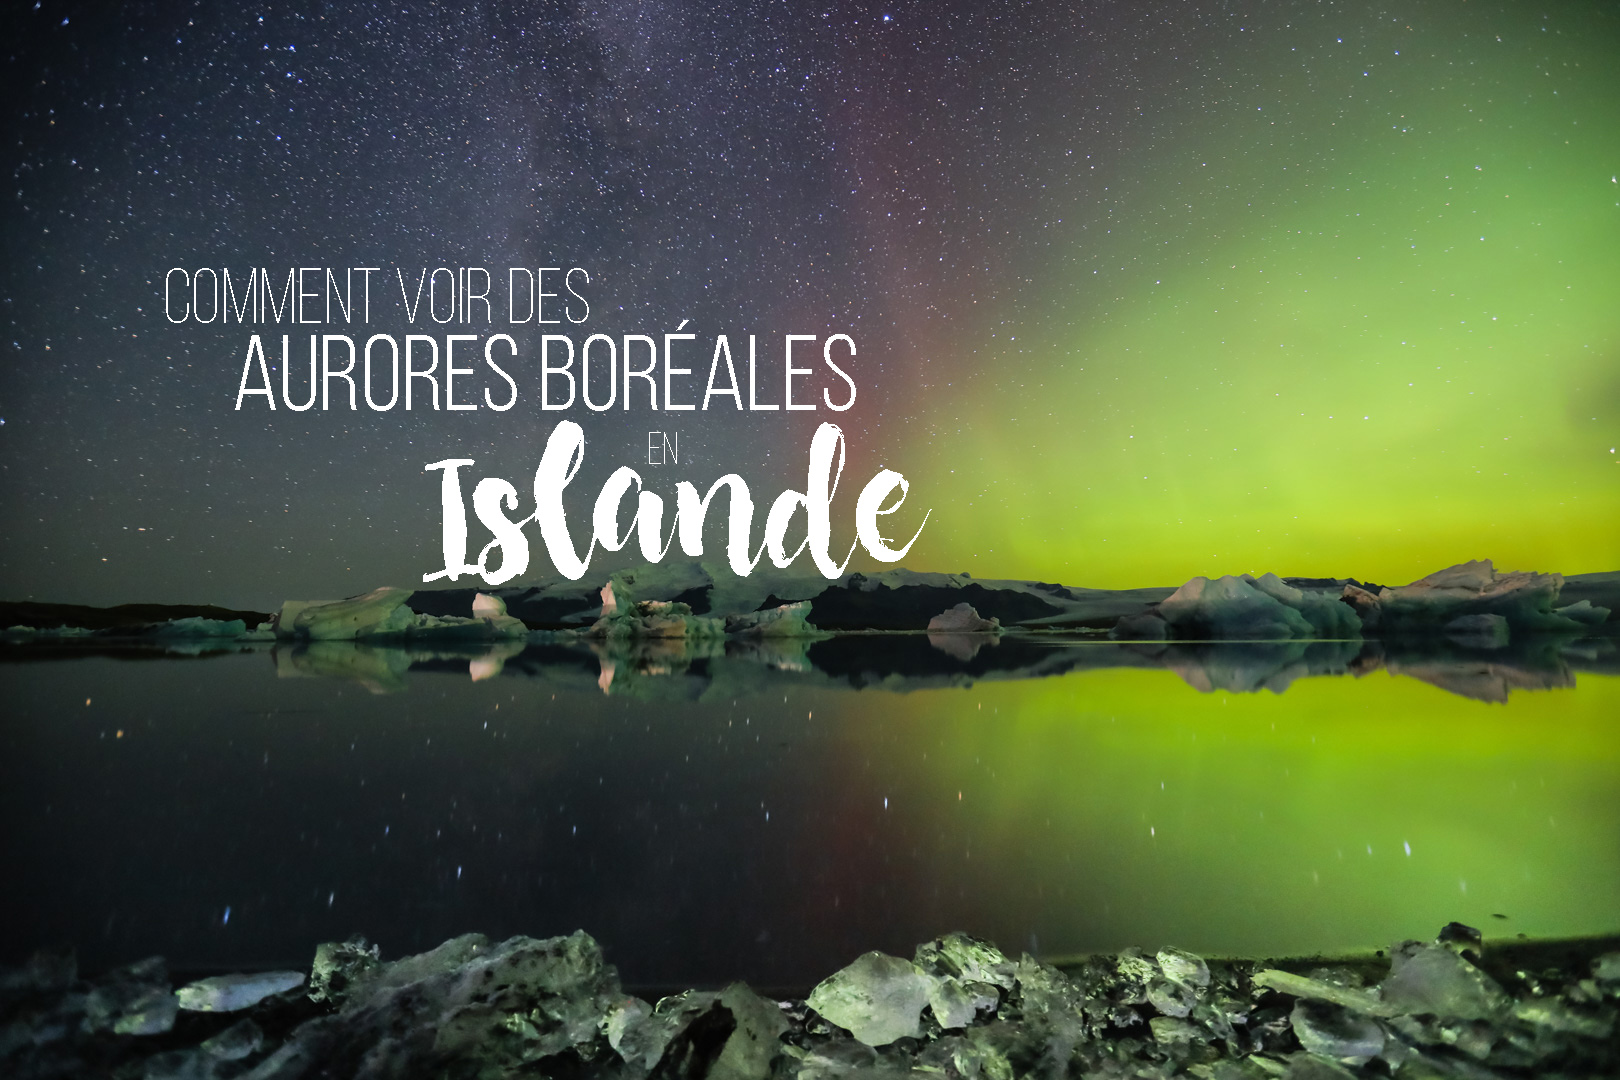 Comment voir des aurores boréales en Islande - Jokulsarlon